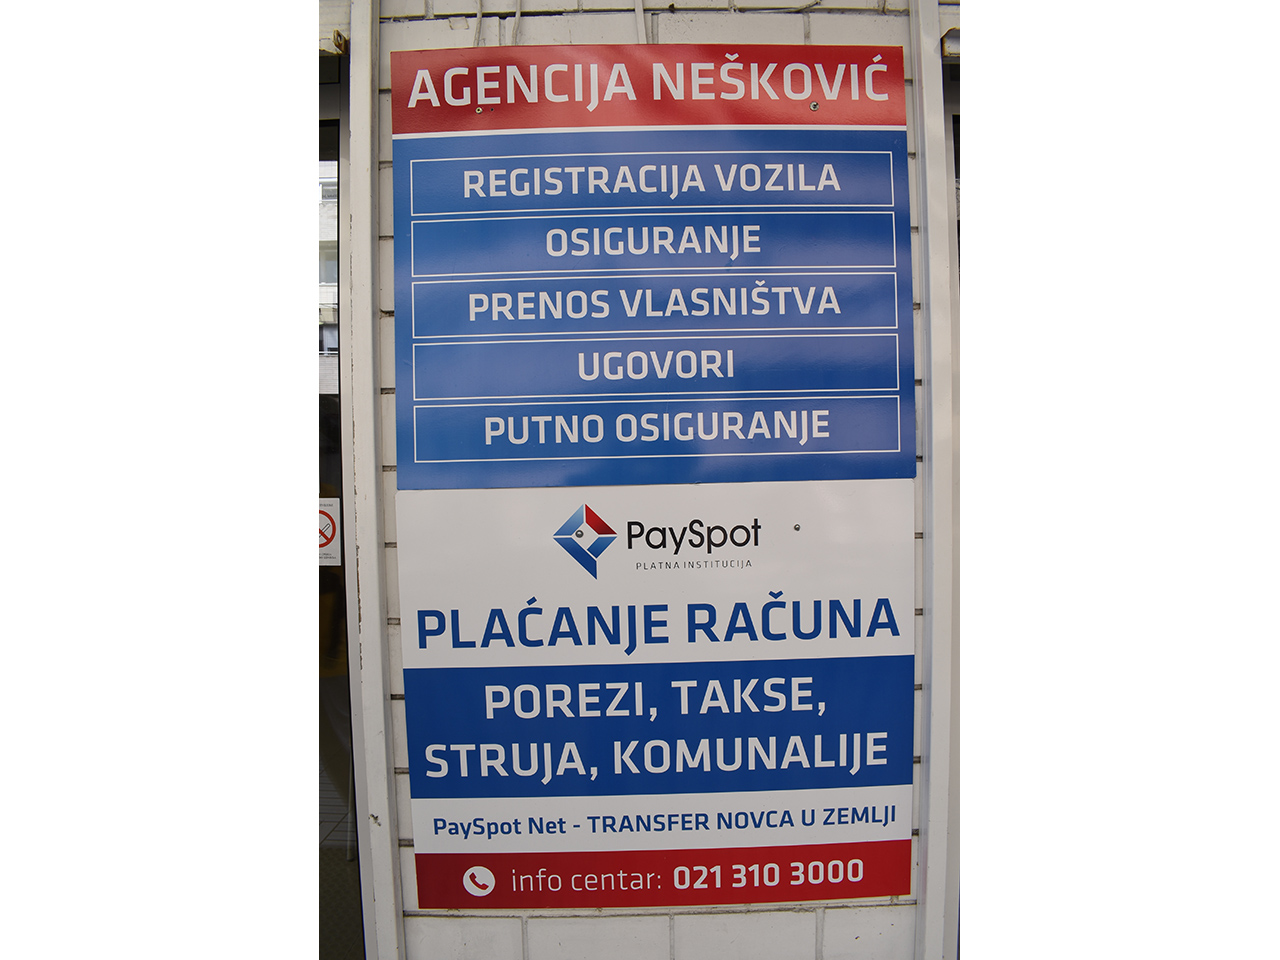 Slika 4 - AGENCIJA NEŠKOVIĆ Registracija vozila Beograd